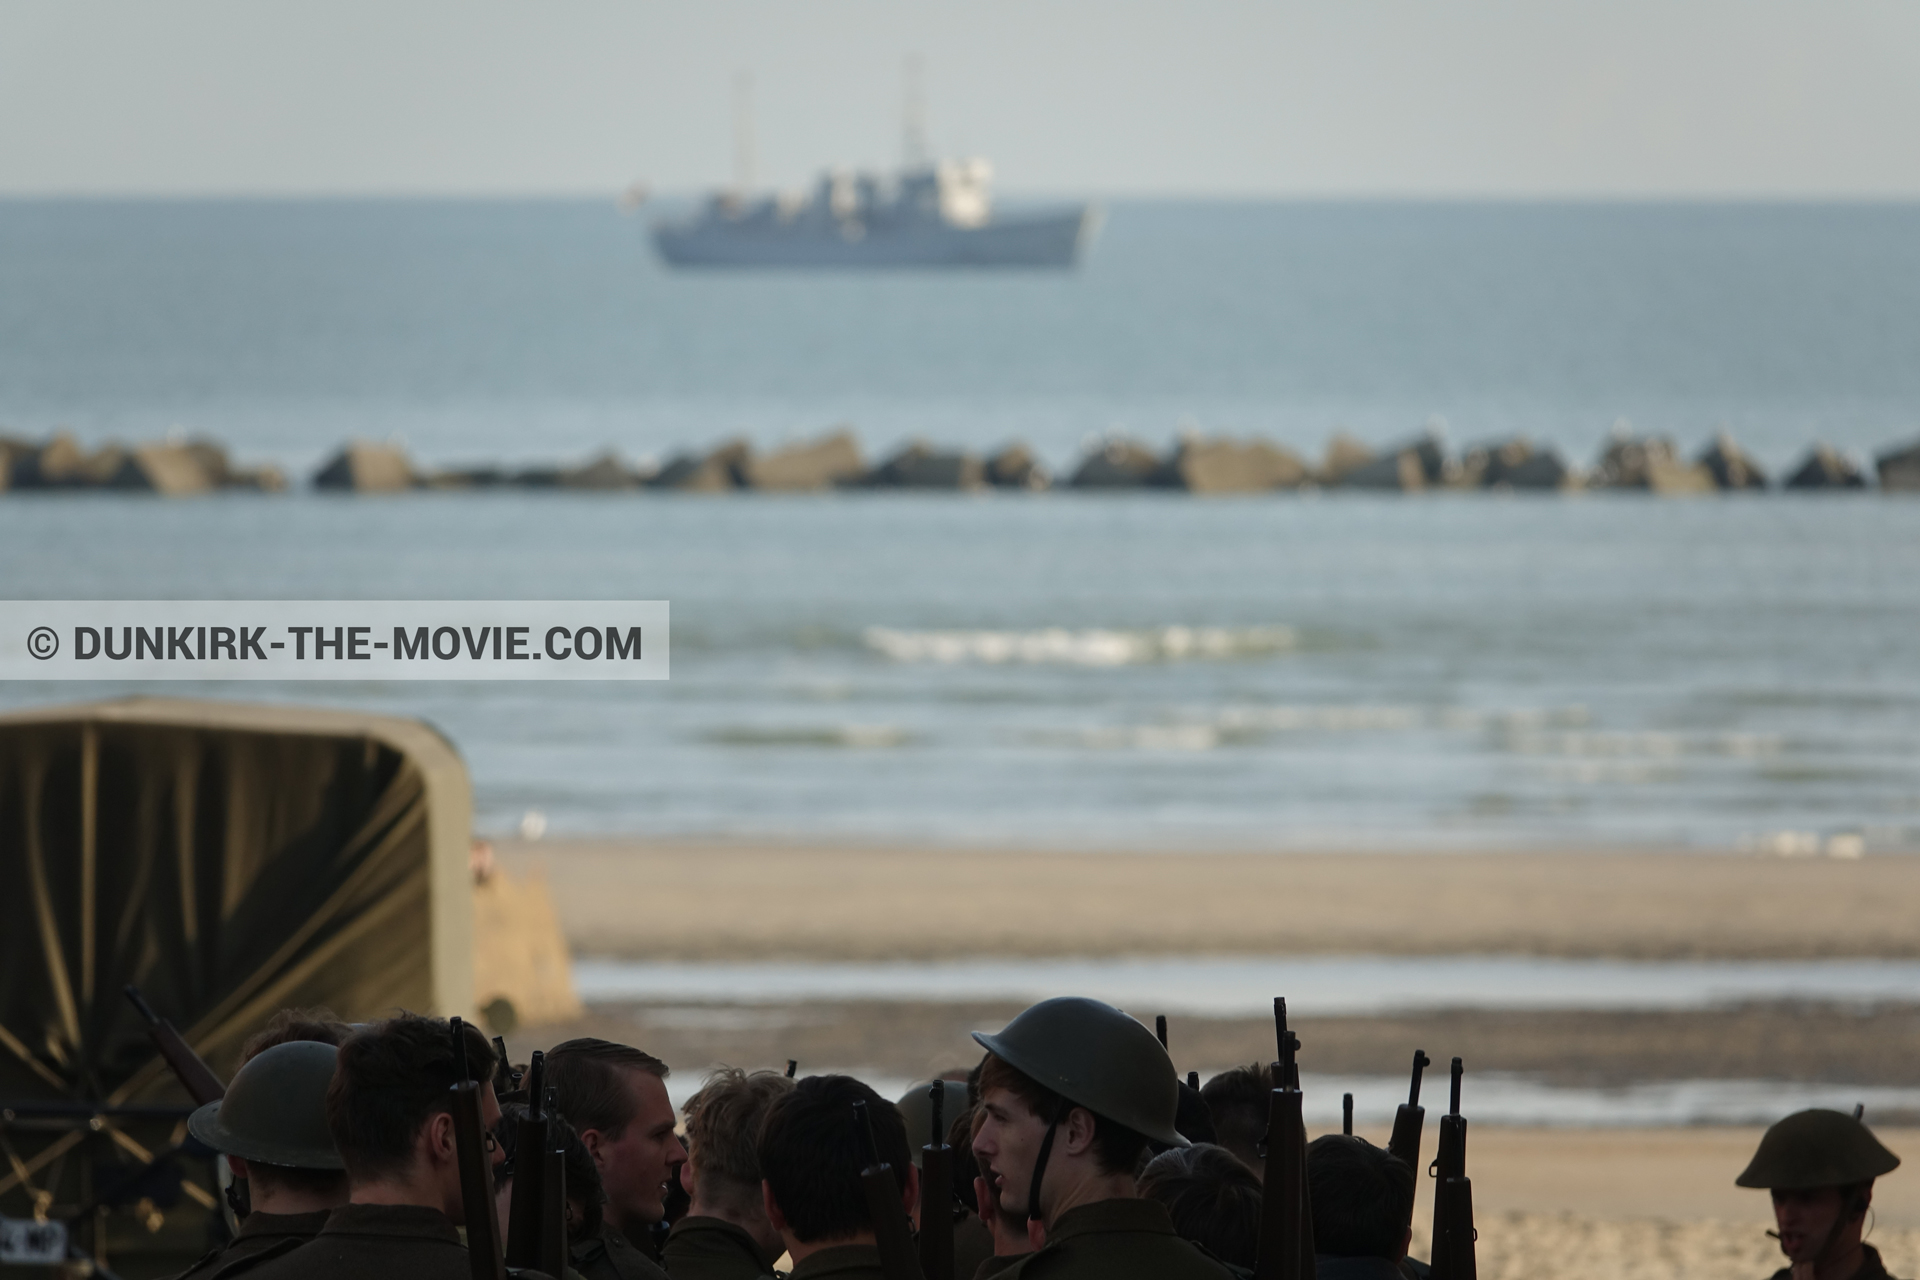 Photo avec bateau, camion, figurants, H11 - MLV Castor, plage,  des dessous du Film Dunkerque de Nolan